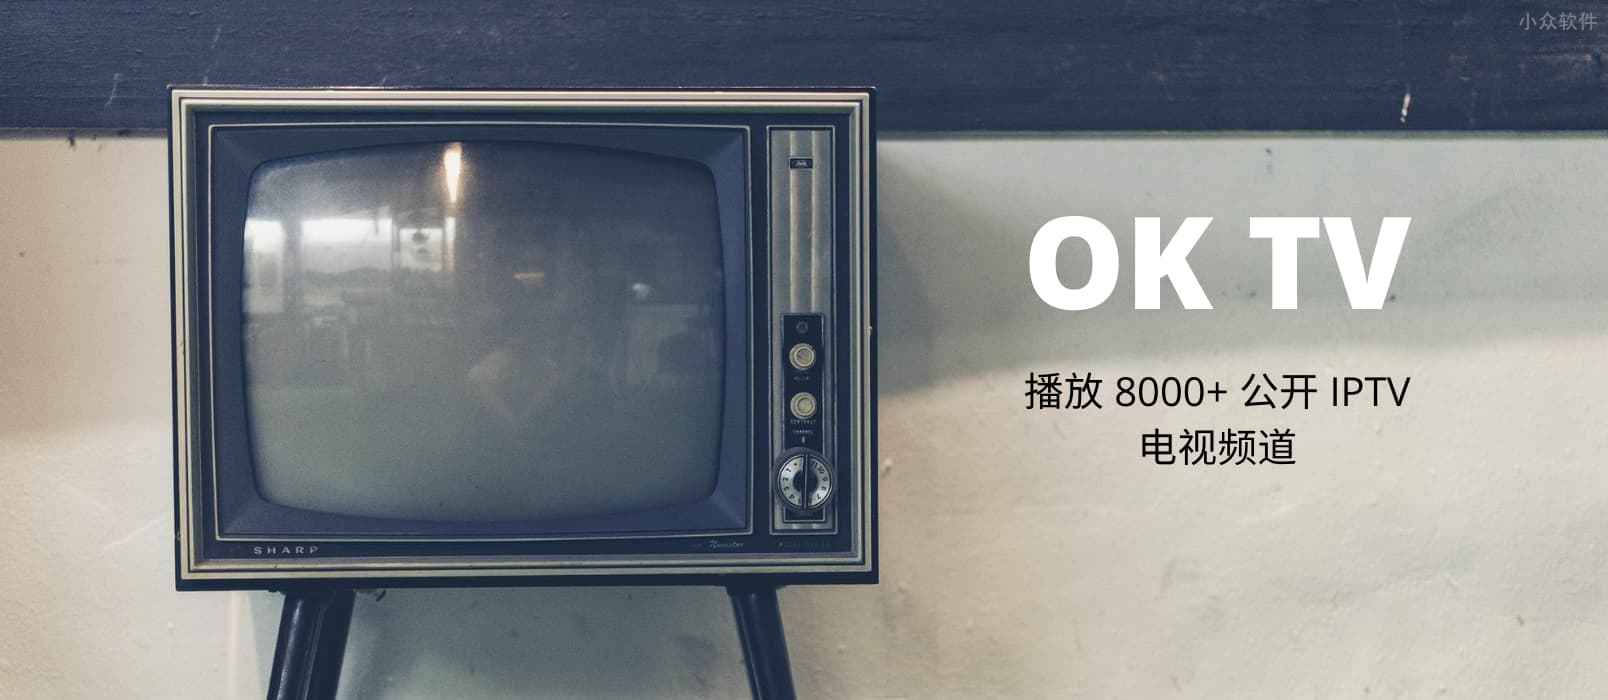 OK TV –  用安卓盒子播放全球 8000+ 公开 IPTV 电视频道